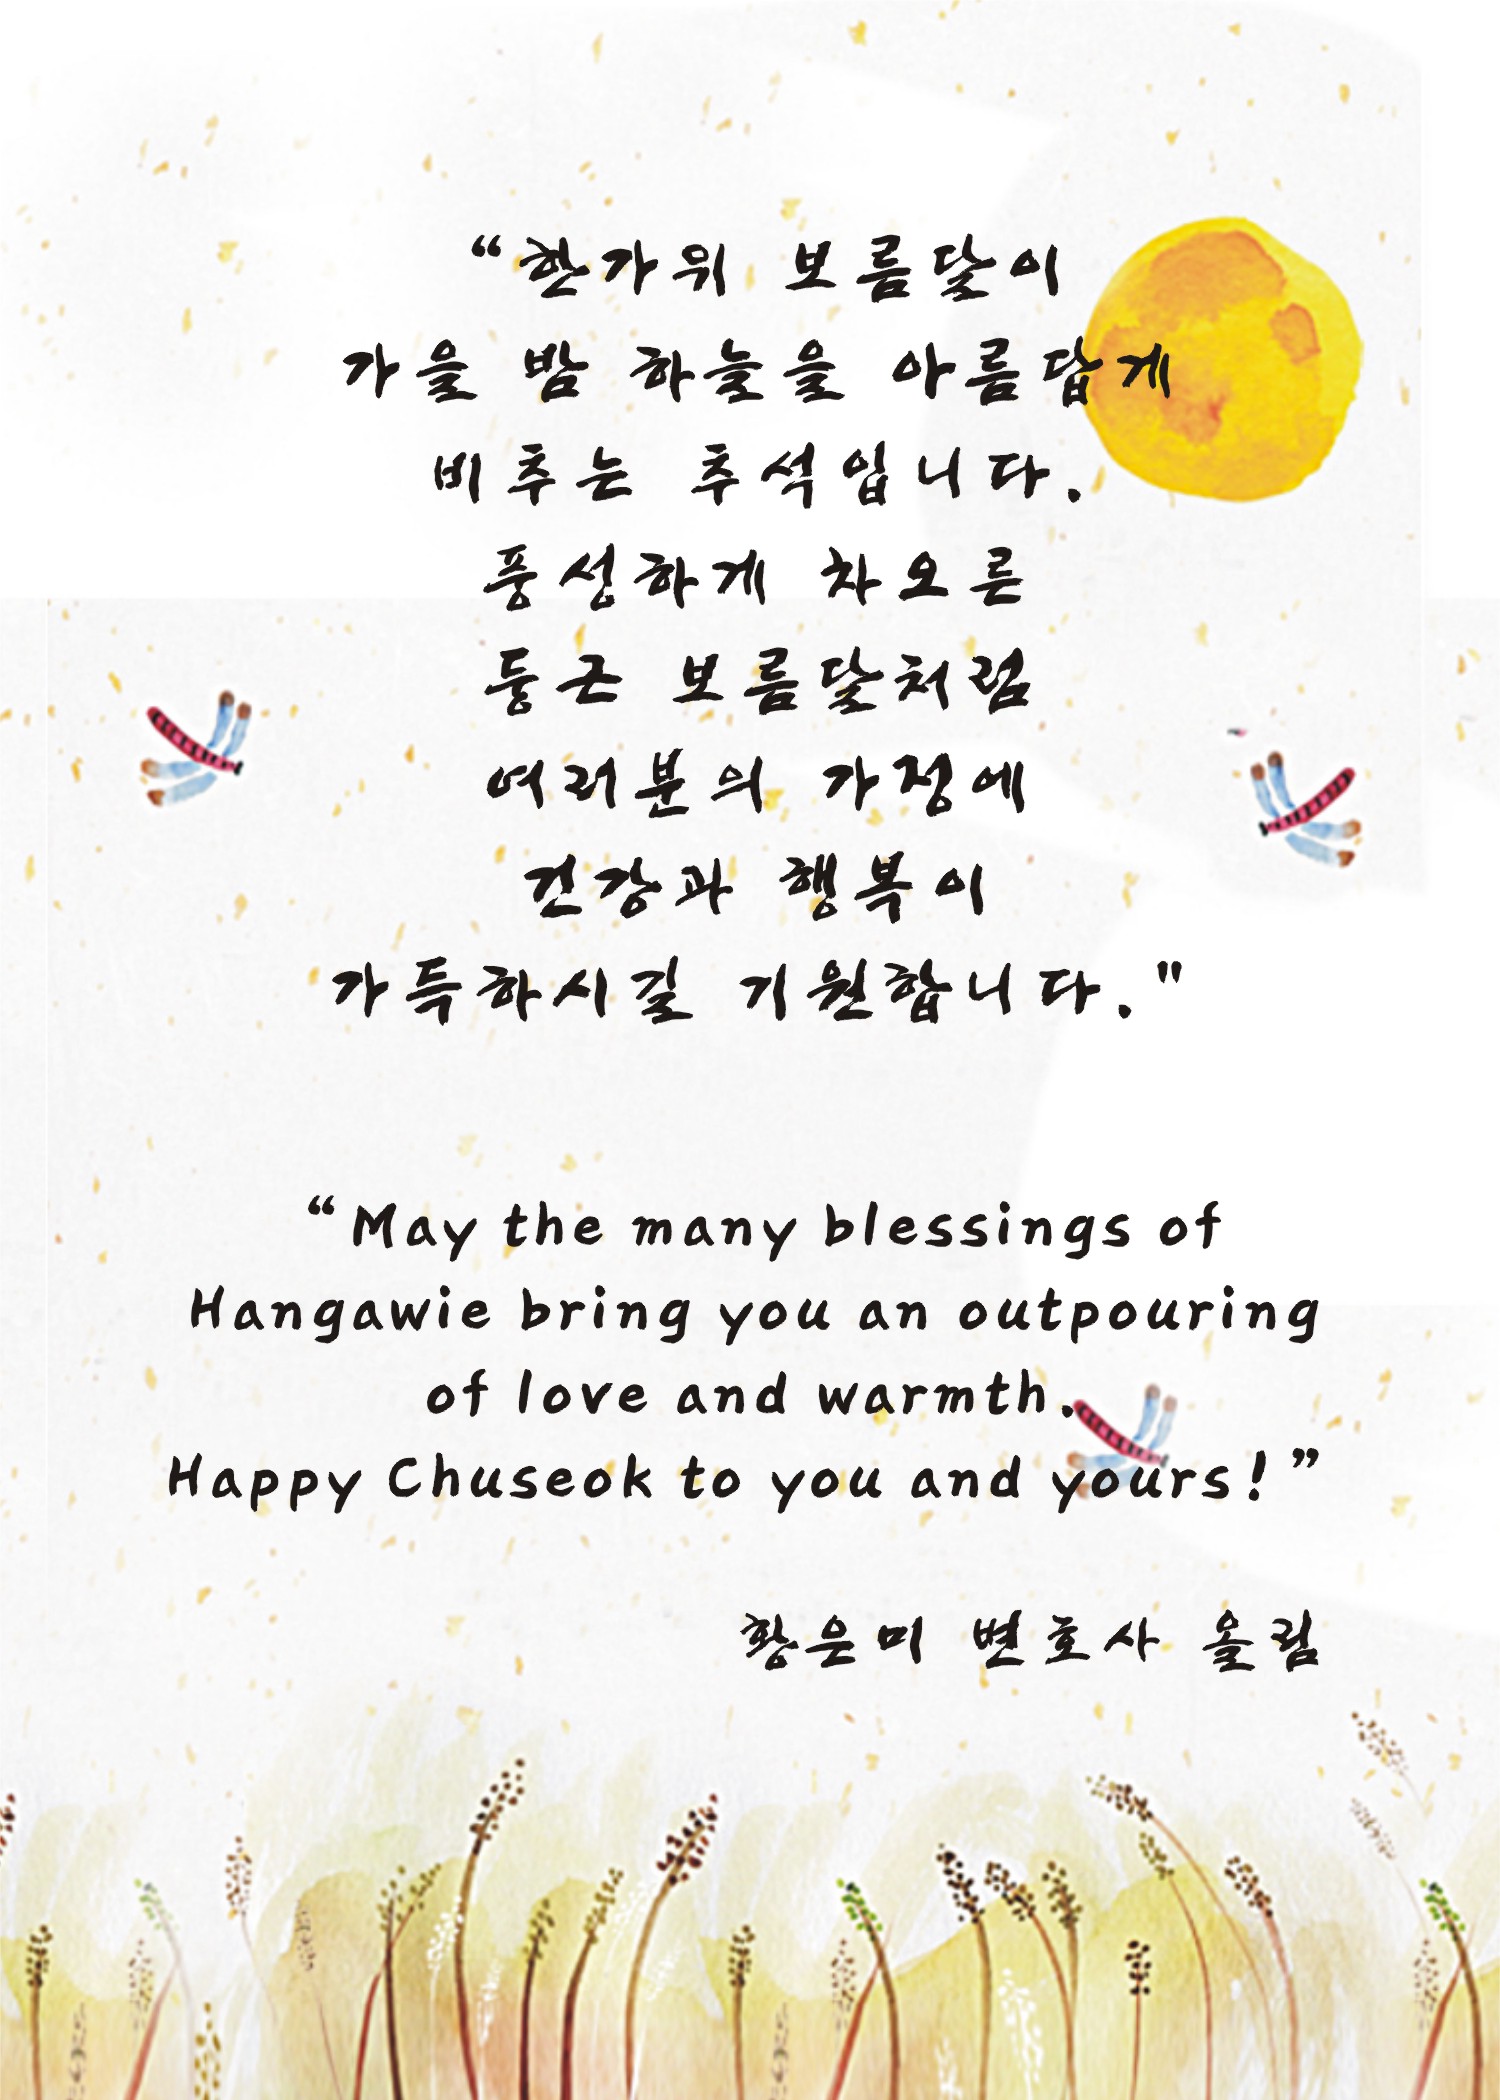 Celebrating Chuseok or Hangawi- Korean Thanksgiving